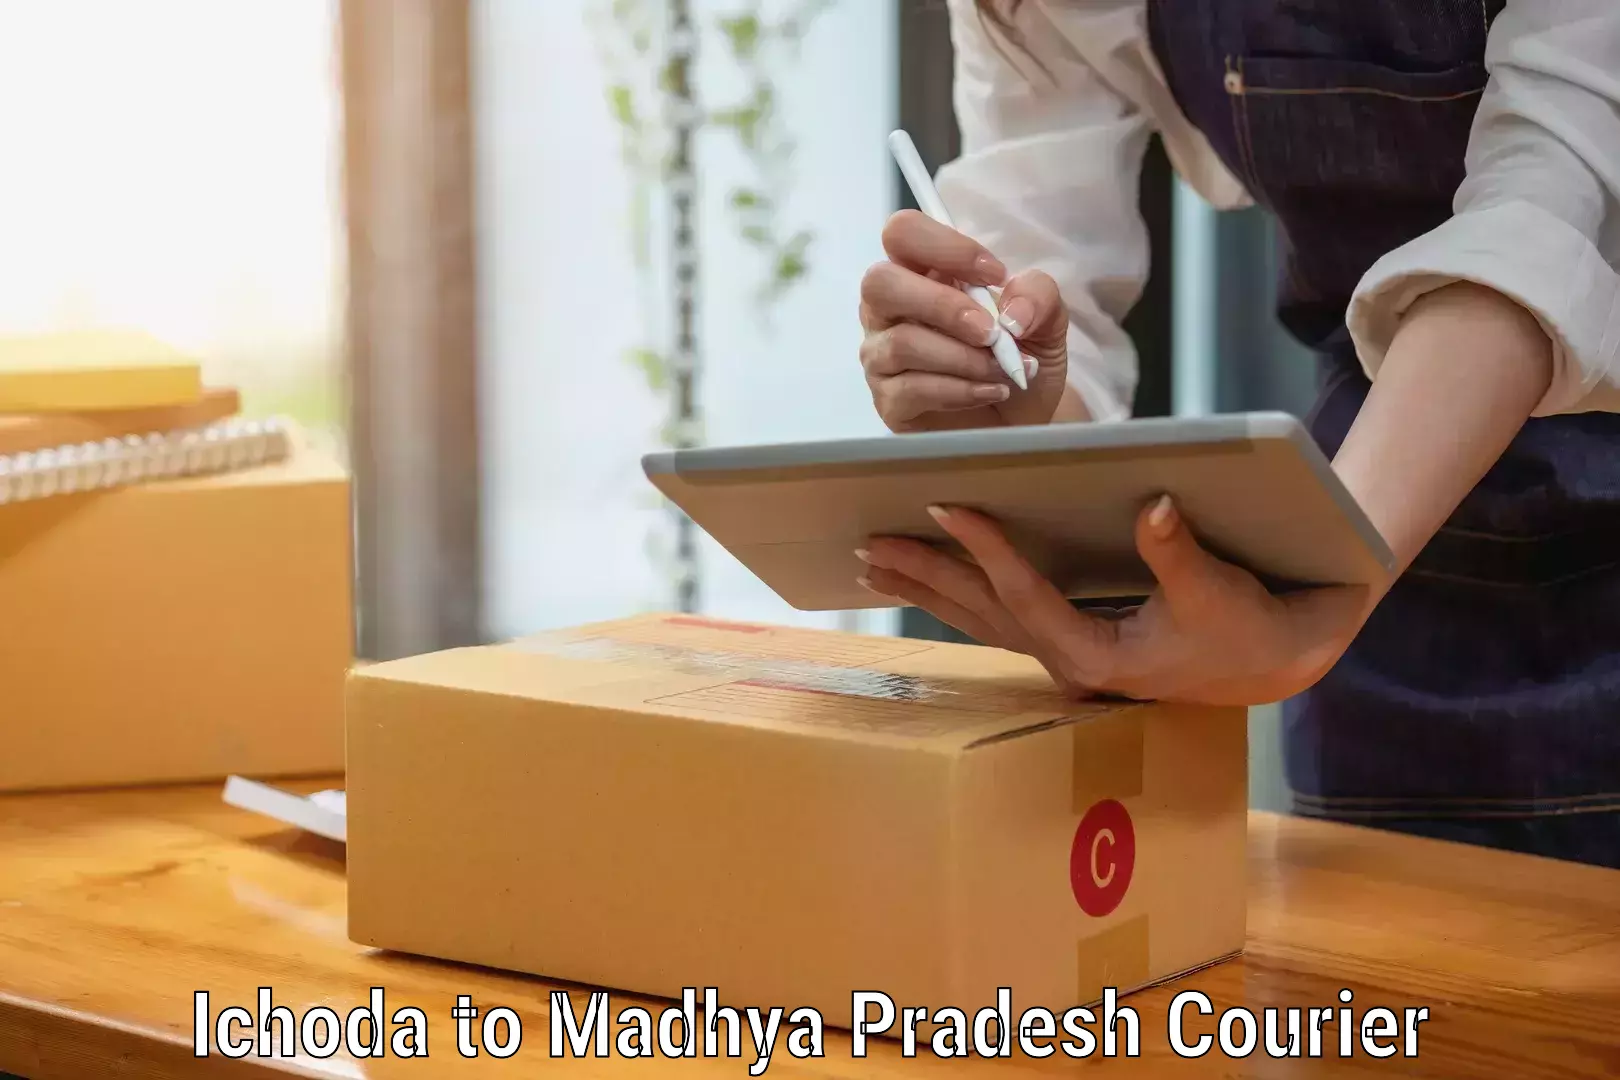 Home relocation experts Ichoda to Madhya Pradesh